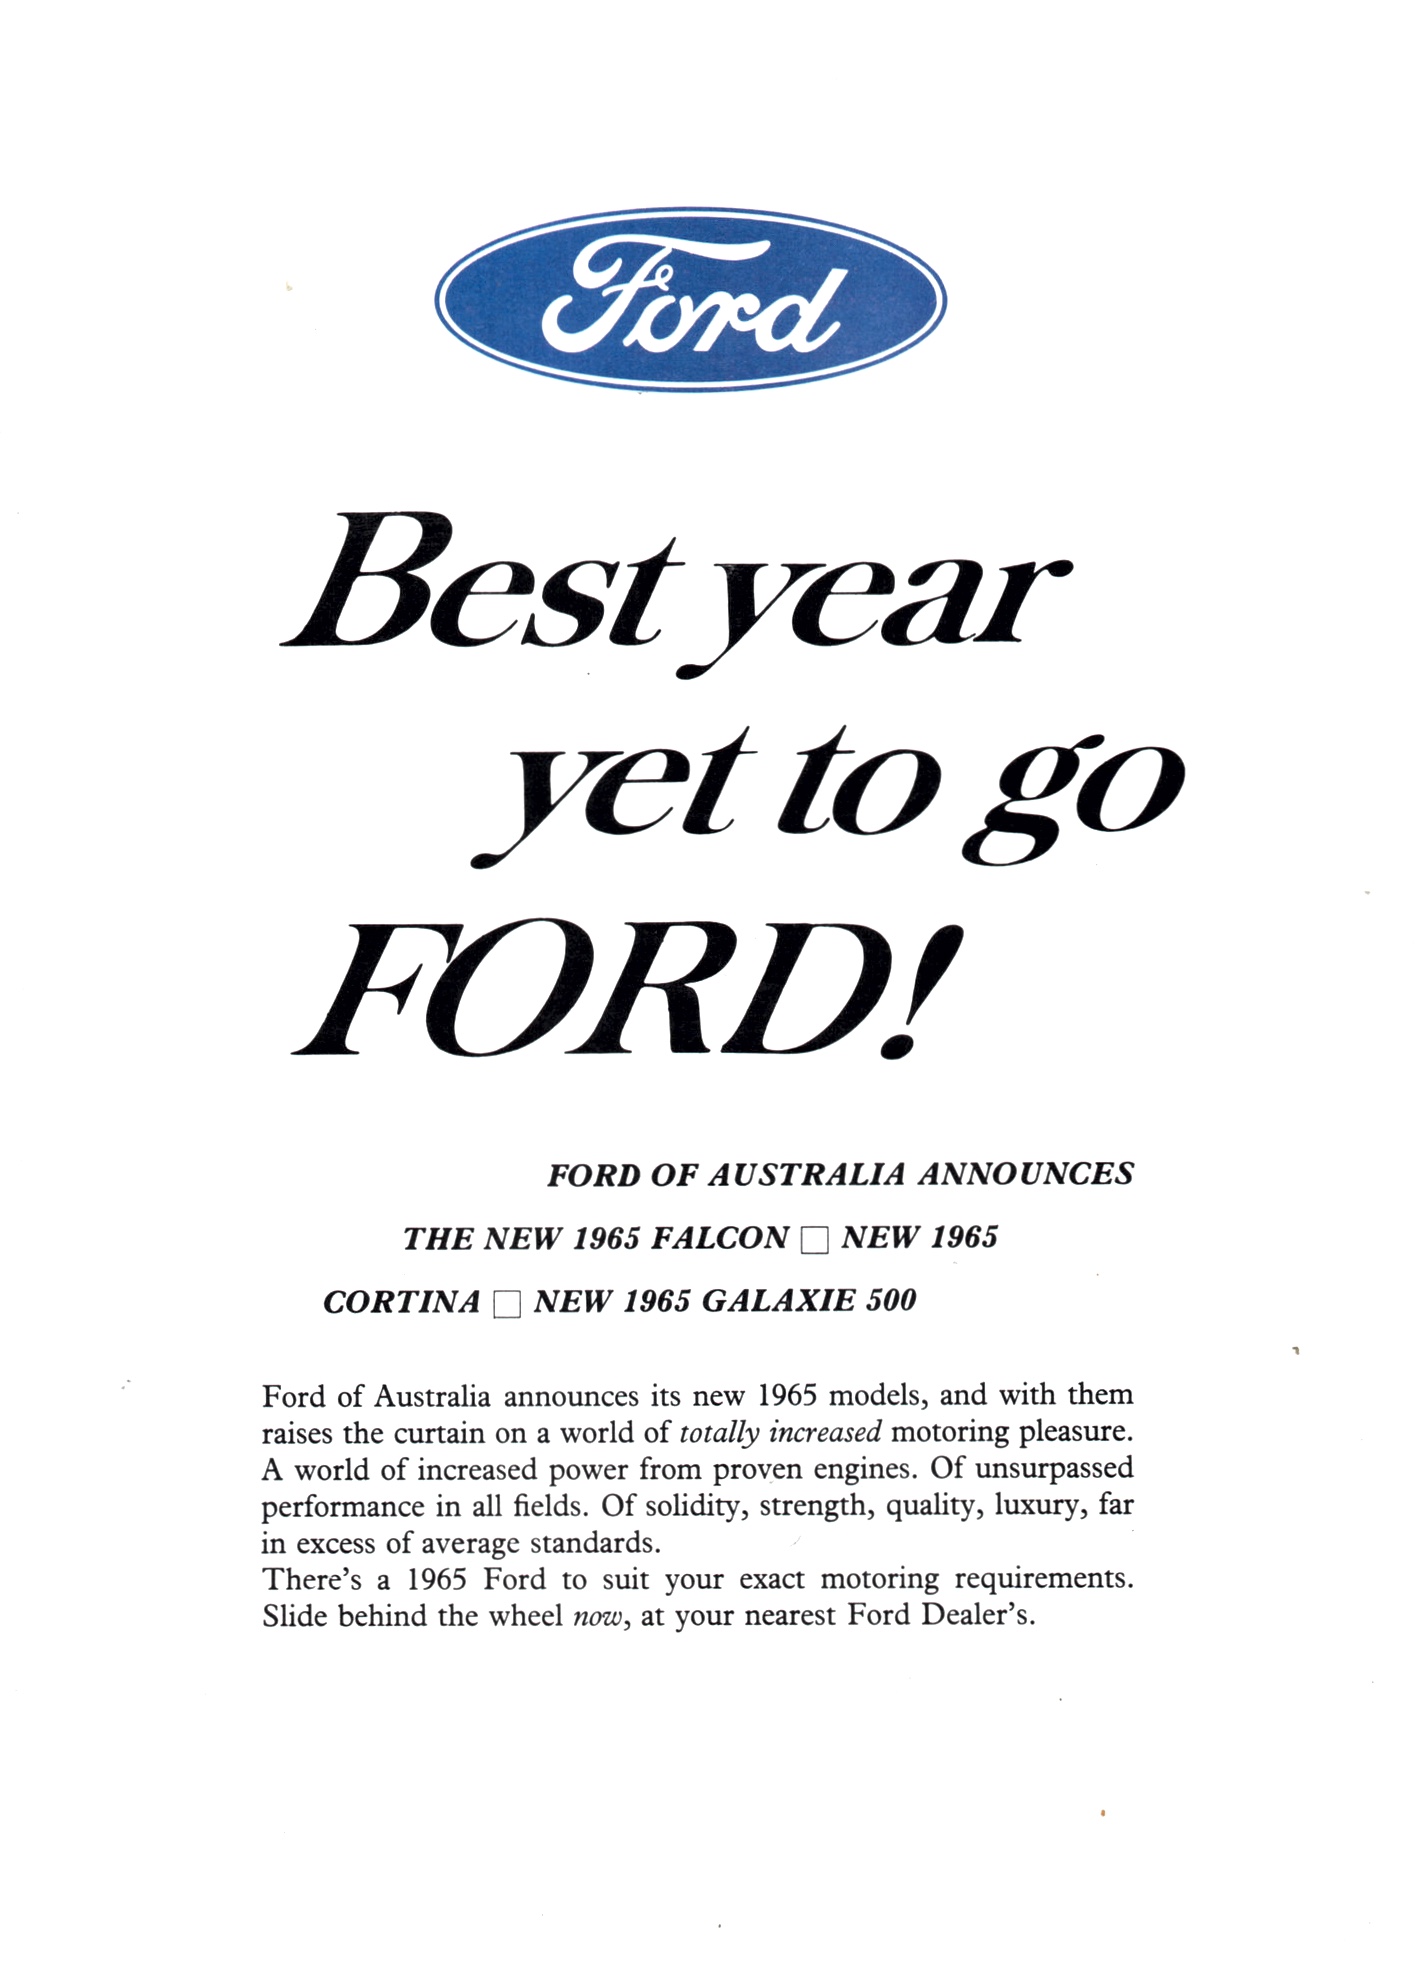 1965 Ford Australia Model Range